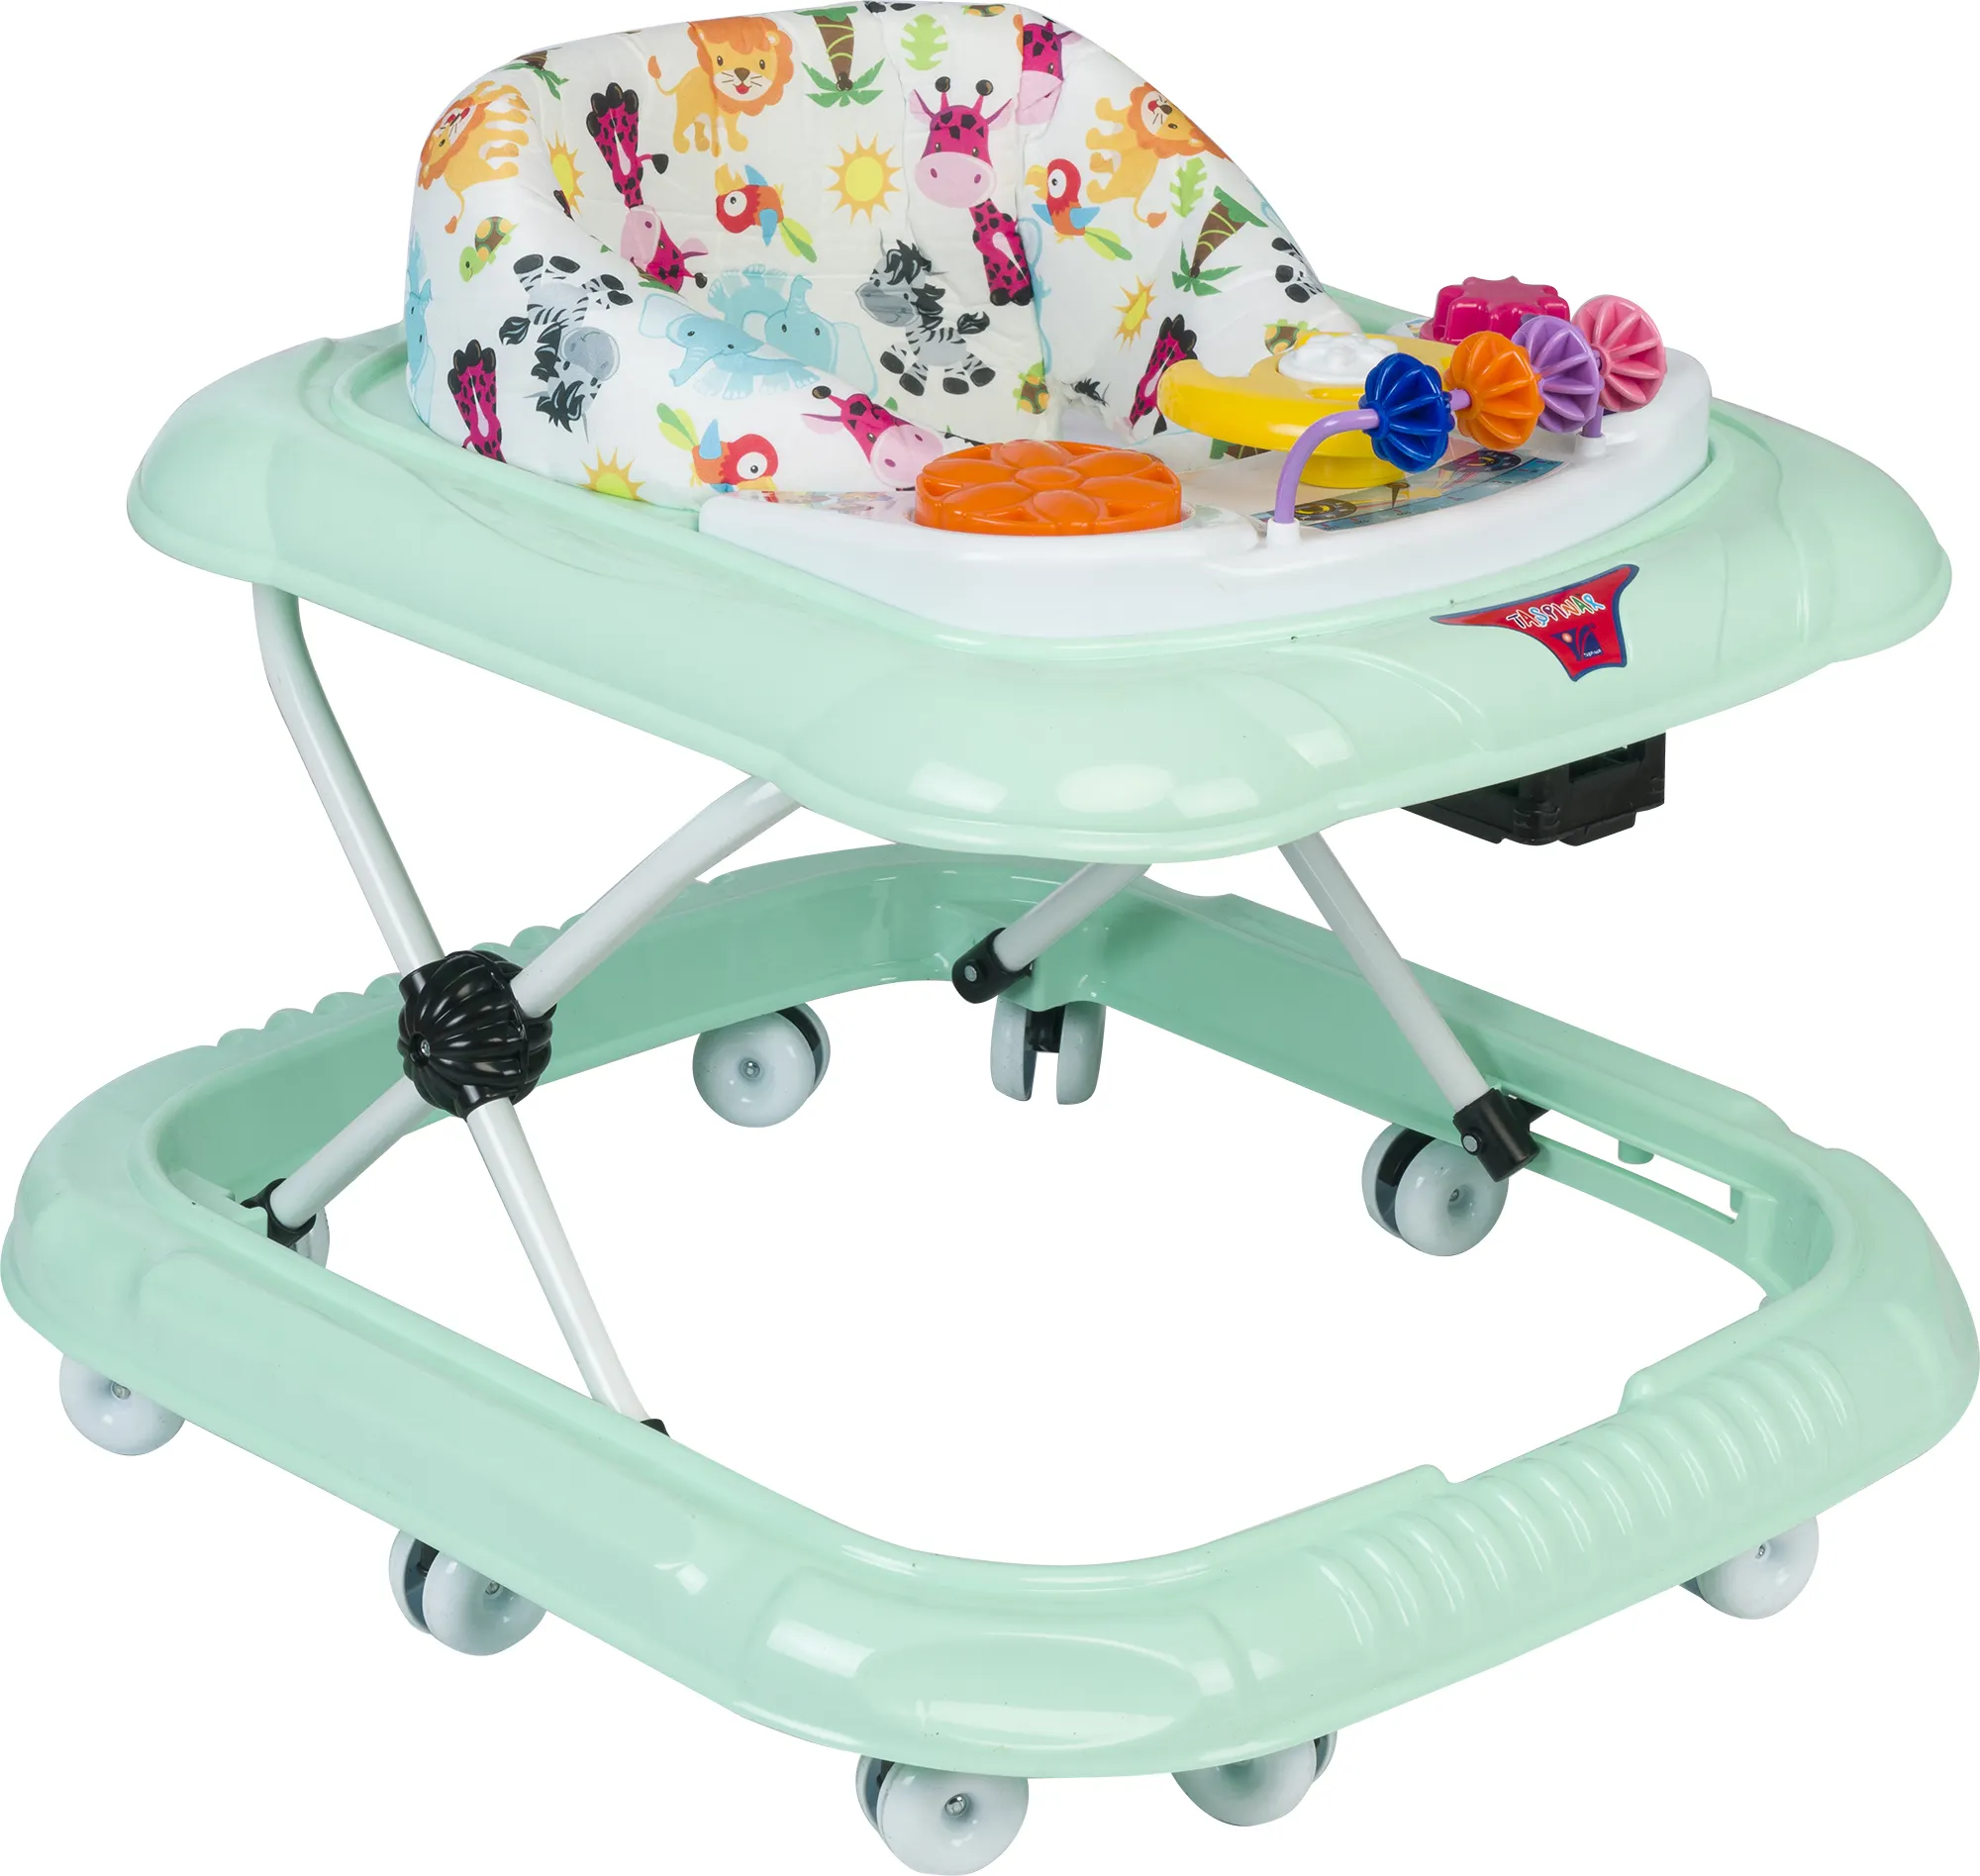 새로운 유행 모델 아기 워커 저렴한 가격 베스트 셀러 유아 워커 아기 캐리어 360 도 바퀴 경적 테이블에 쾌활한 장난감